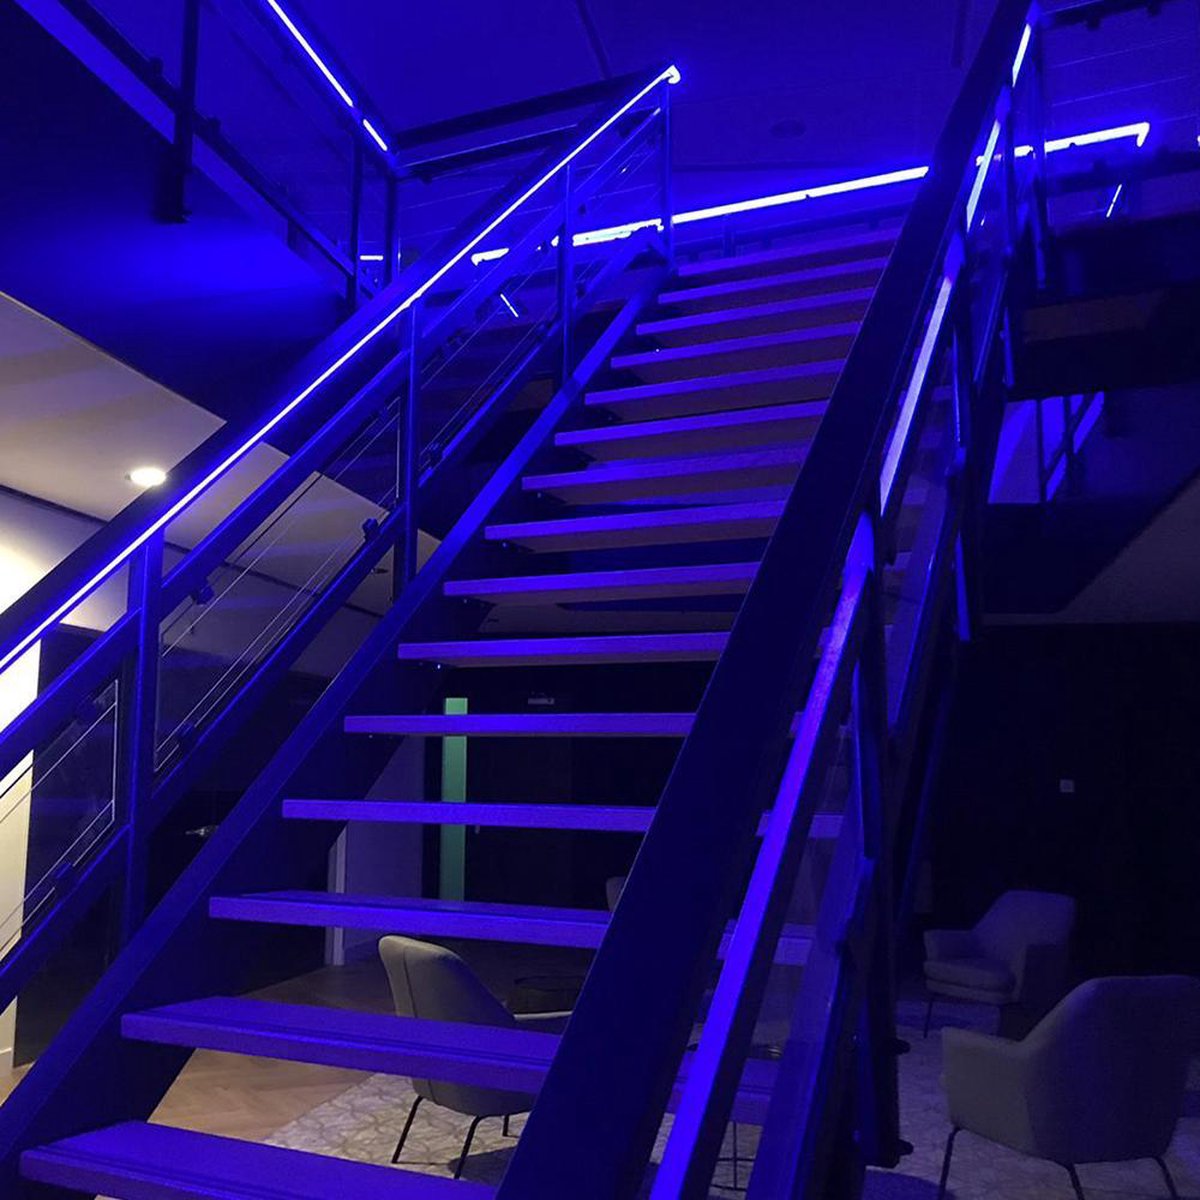 7 mètres RGB Neon LED Flex Maxi Round - Ensemble complet d